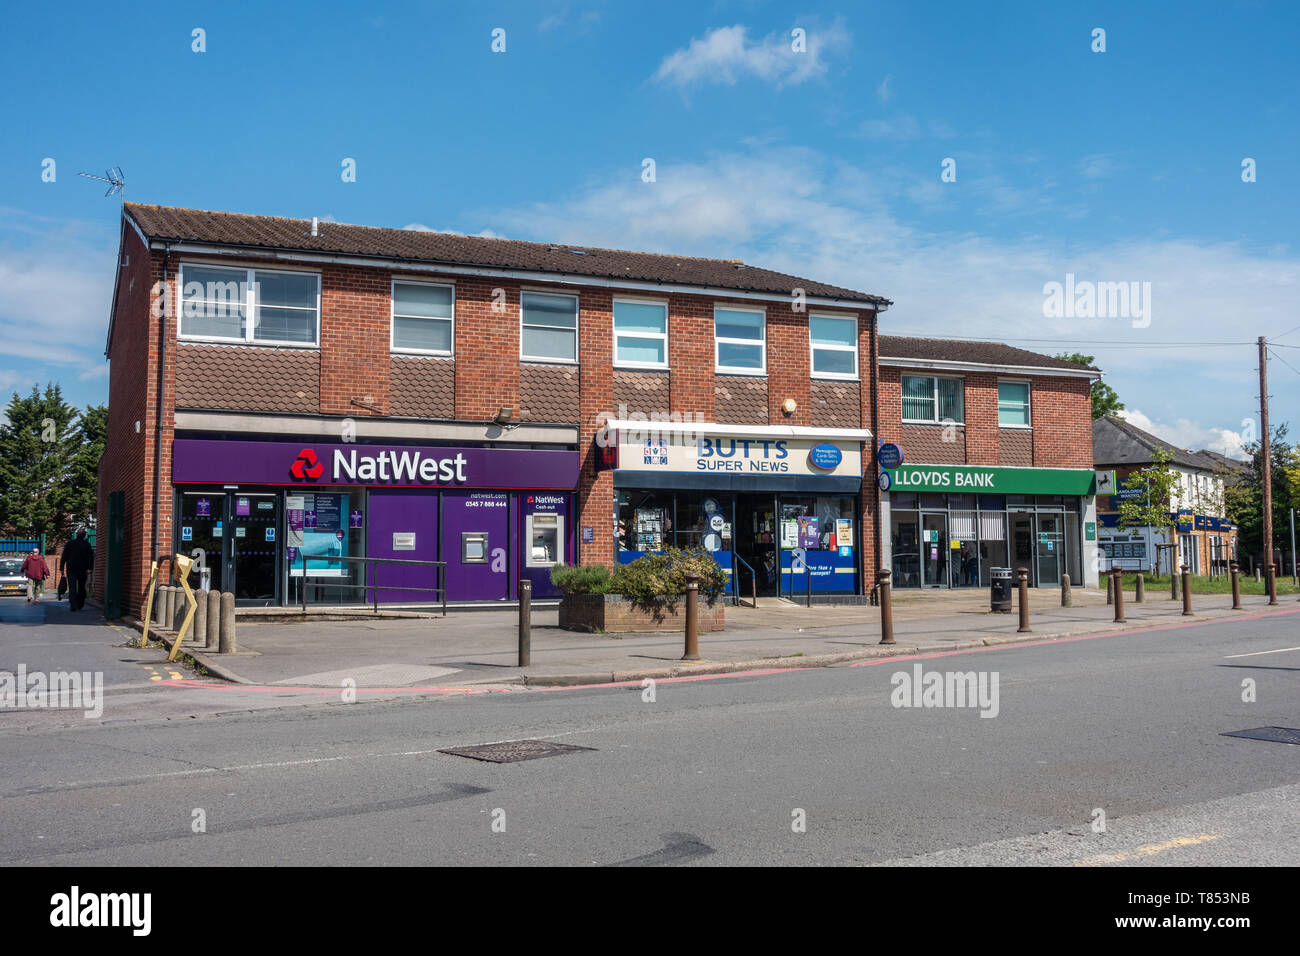 Les banques Lloyds et NatWest séparés par un marchand sur la route de l'école, Tilehurst, Reading, Royaume-Uni Banque D'Images